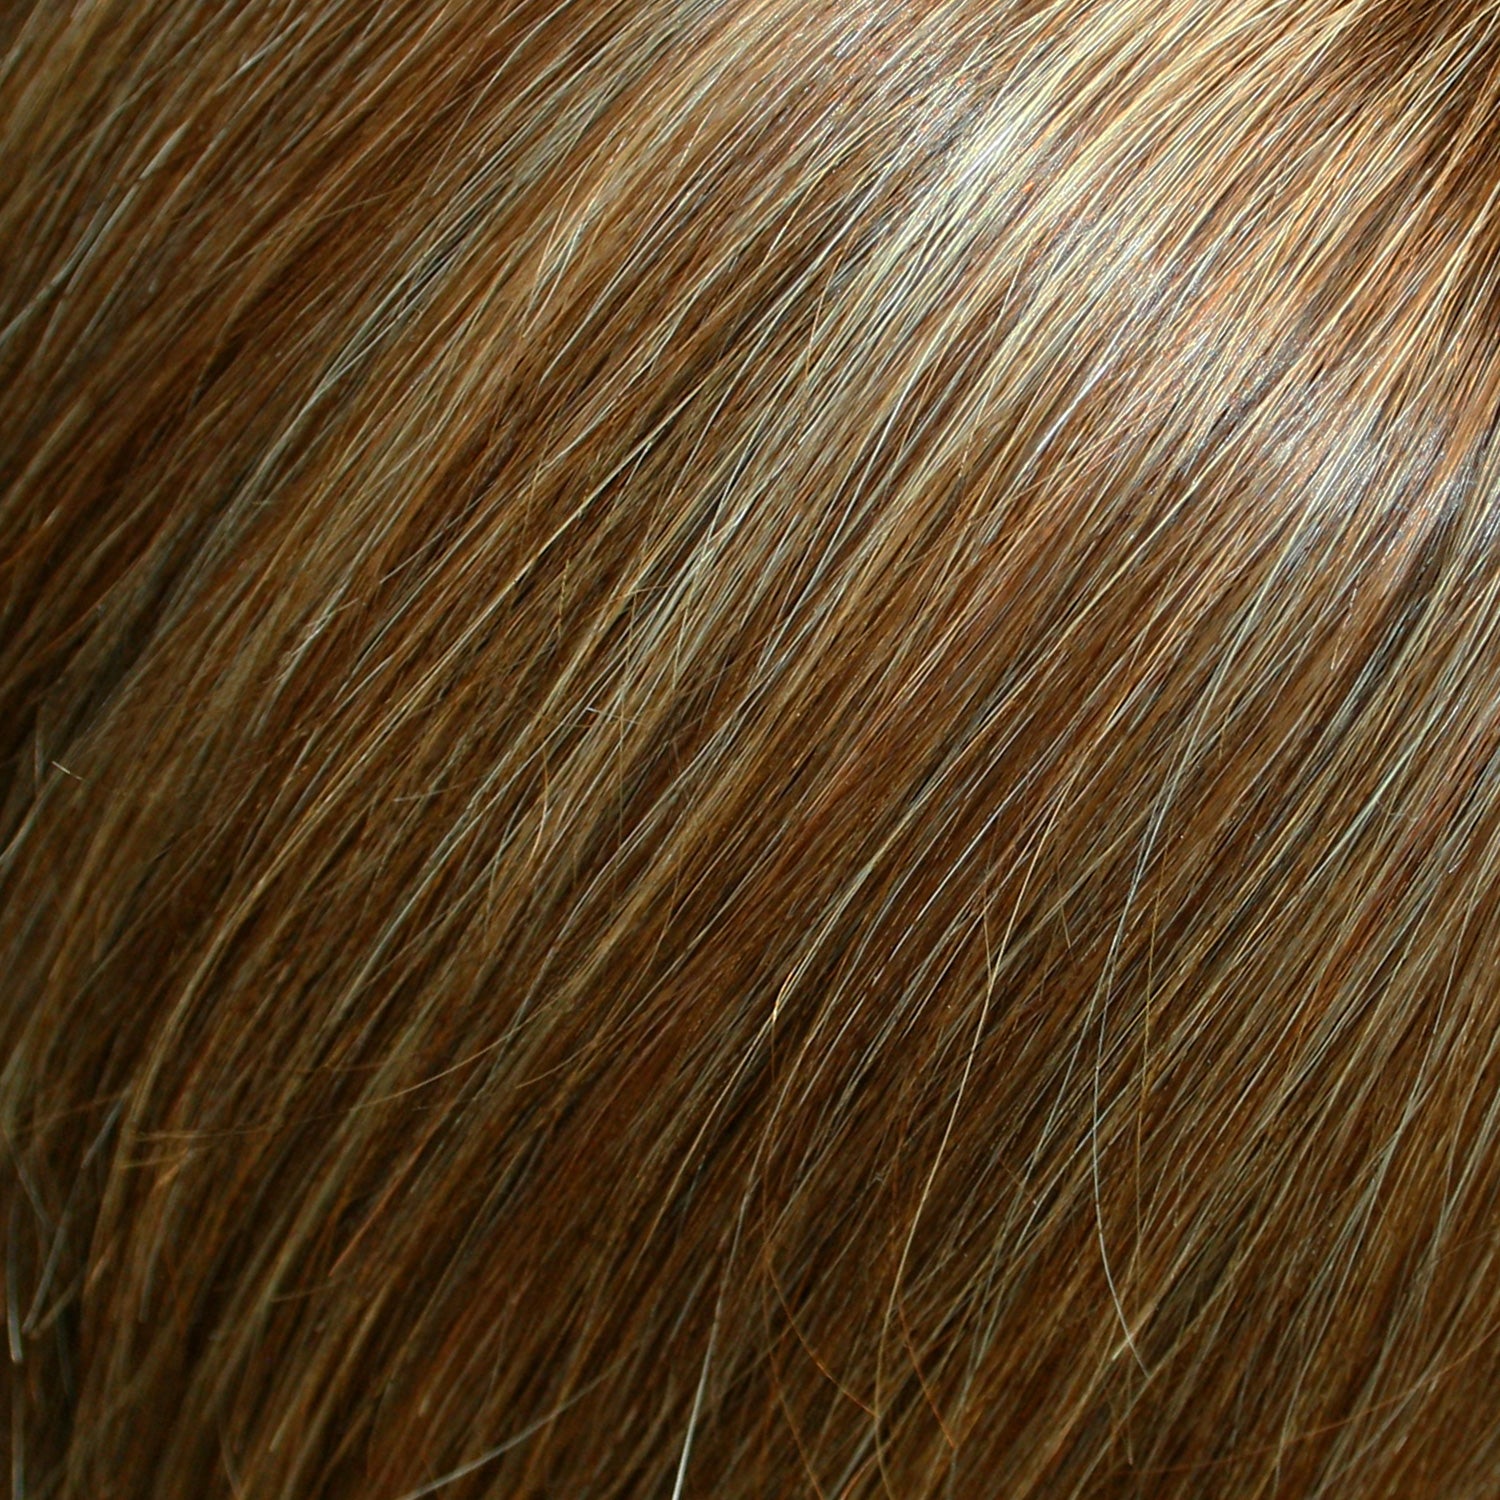 Perruque Cheveux Humains Naturels Avec Mèches Jon Renau Blake Couleur Chocolat fs26-31s6